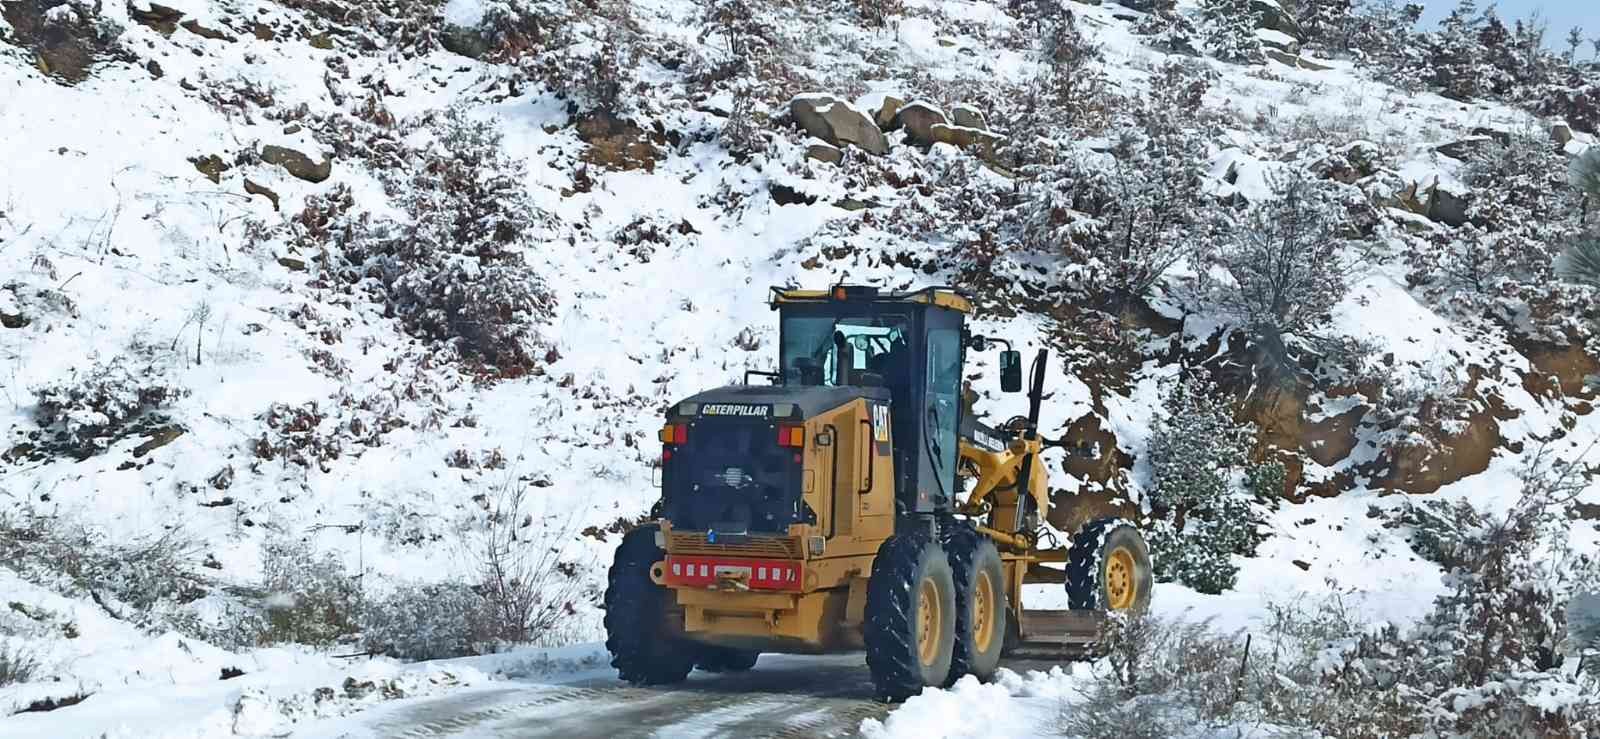 Nazilli’nin yüksek kesimlerinde yollar karla kaplandı